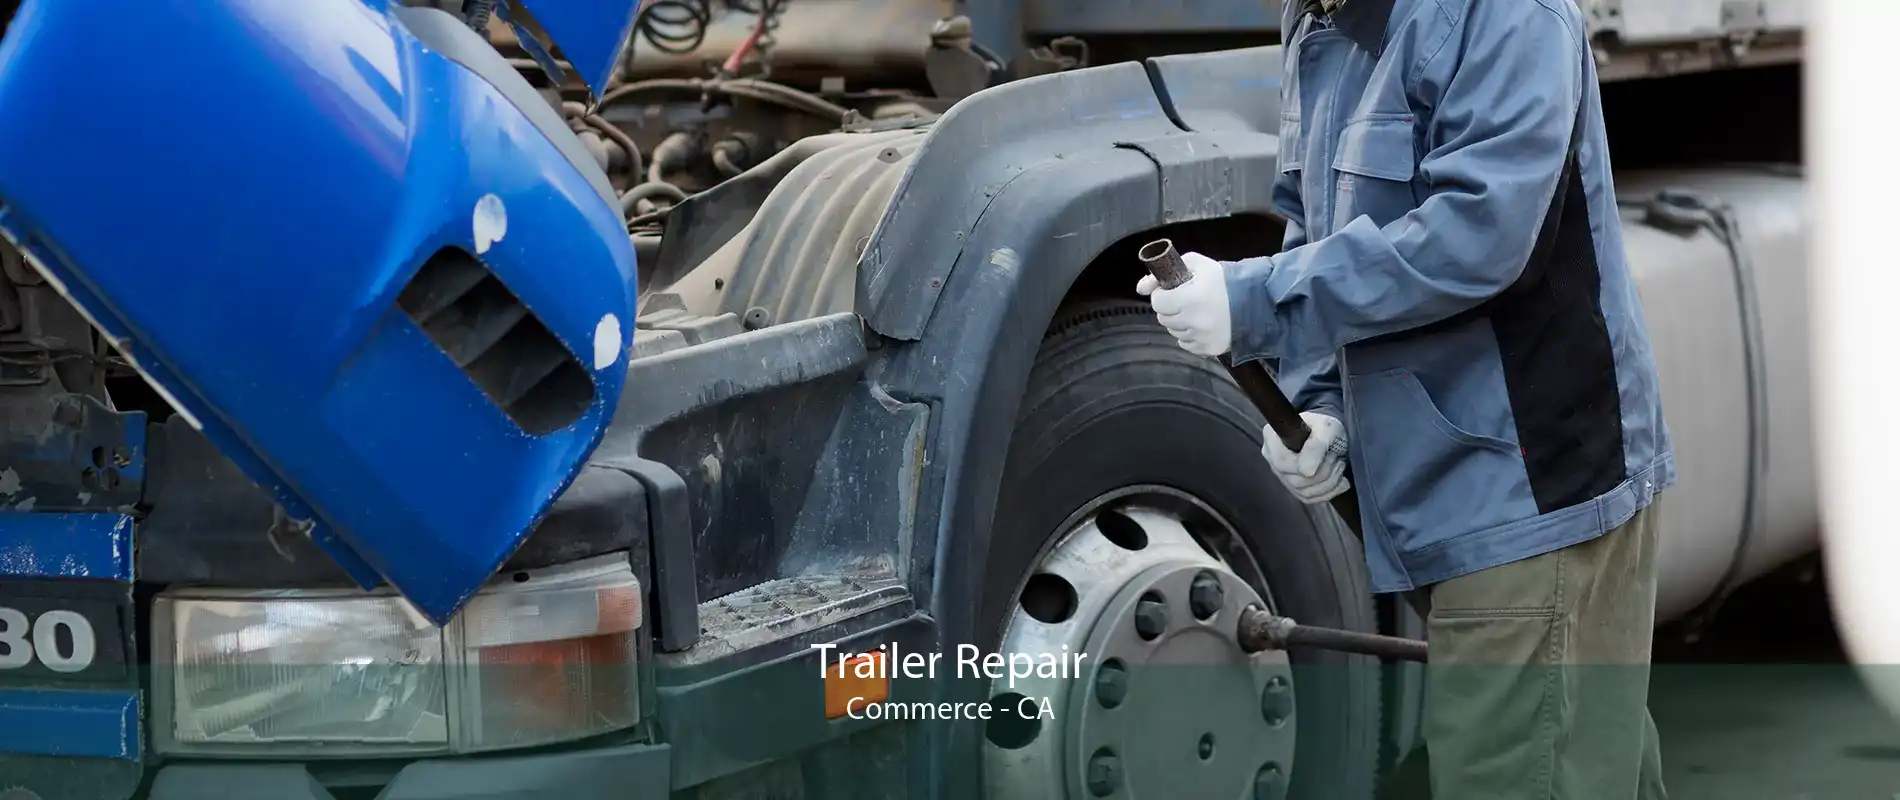 Trailer Repair Commerce - CA